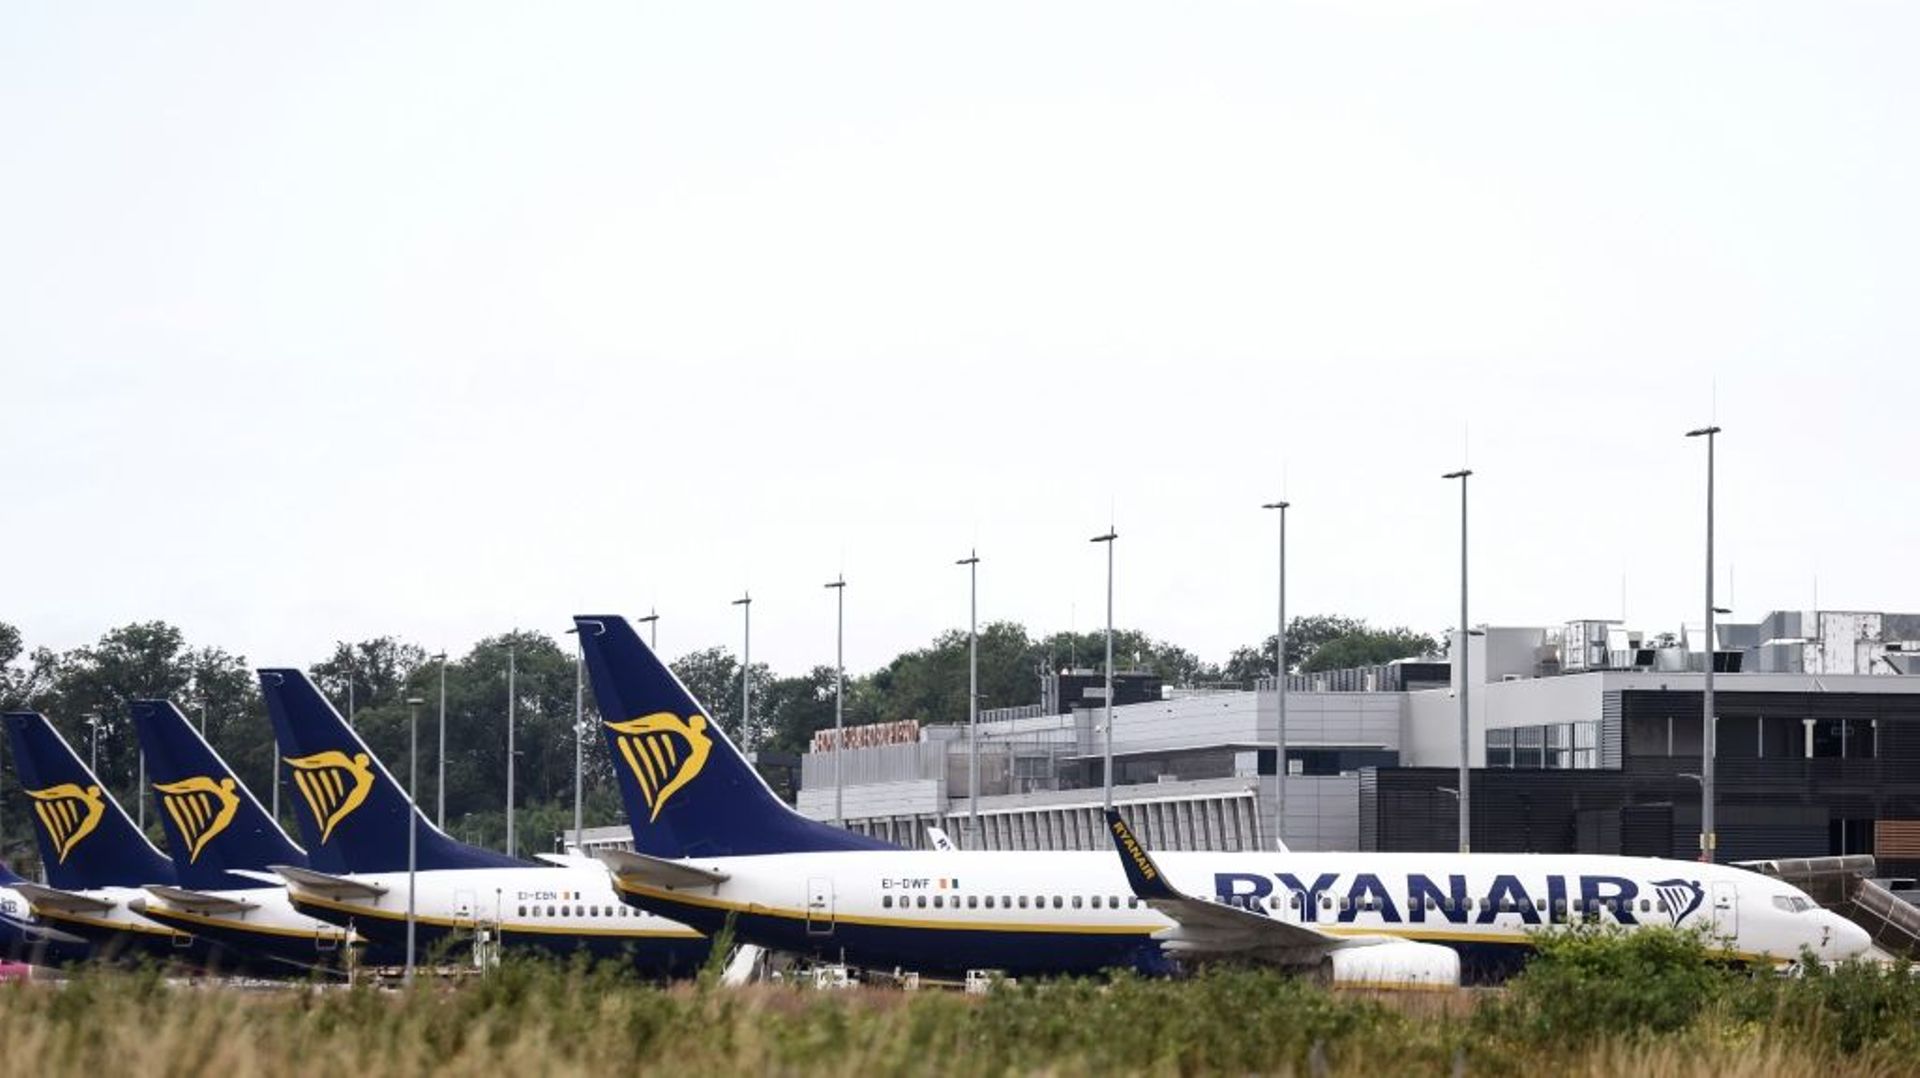 Des avions de la compagnie Ryanair à l'aéroport de Charleroi, le 24 juin 2022 en Belgique